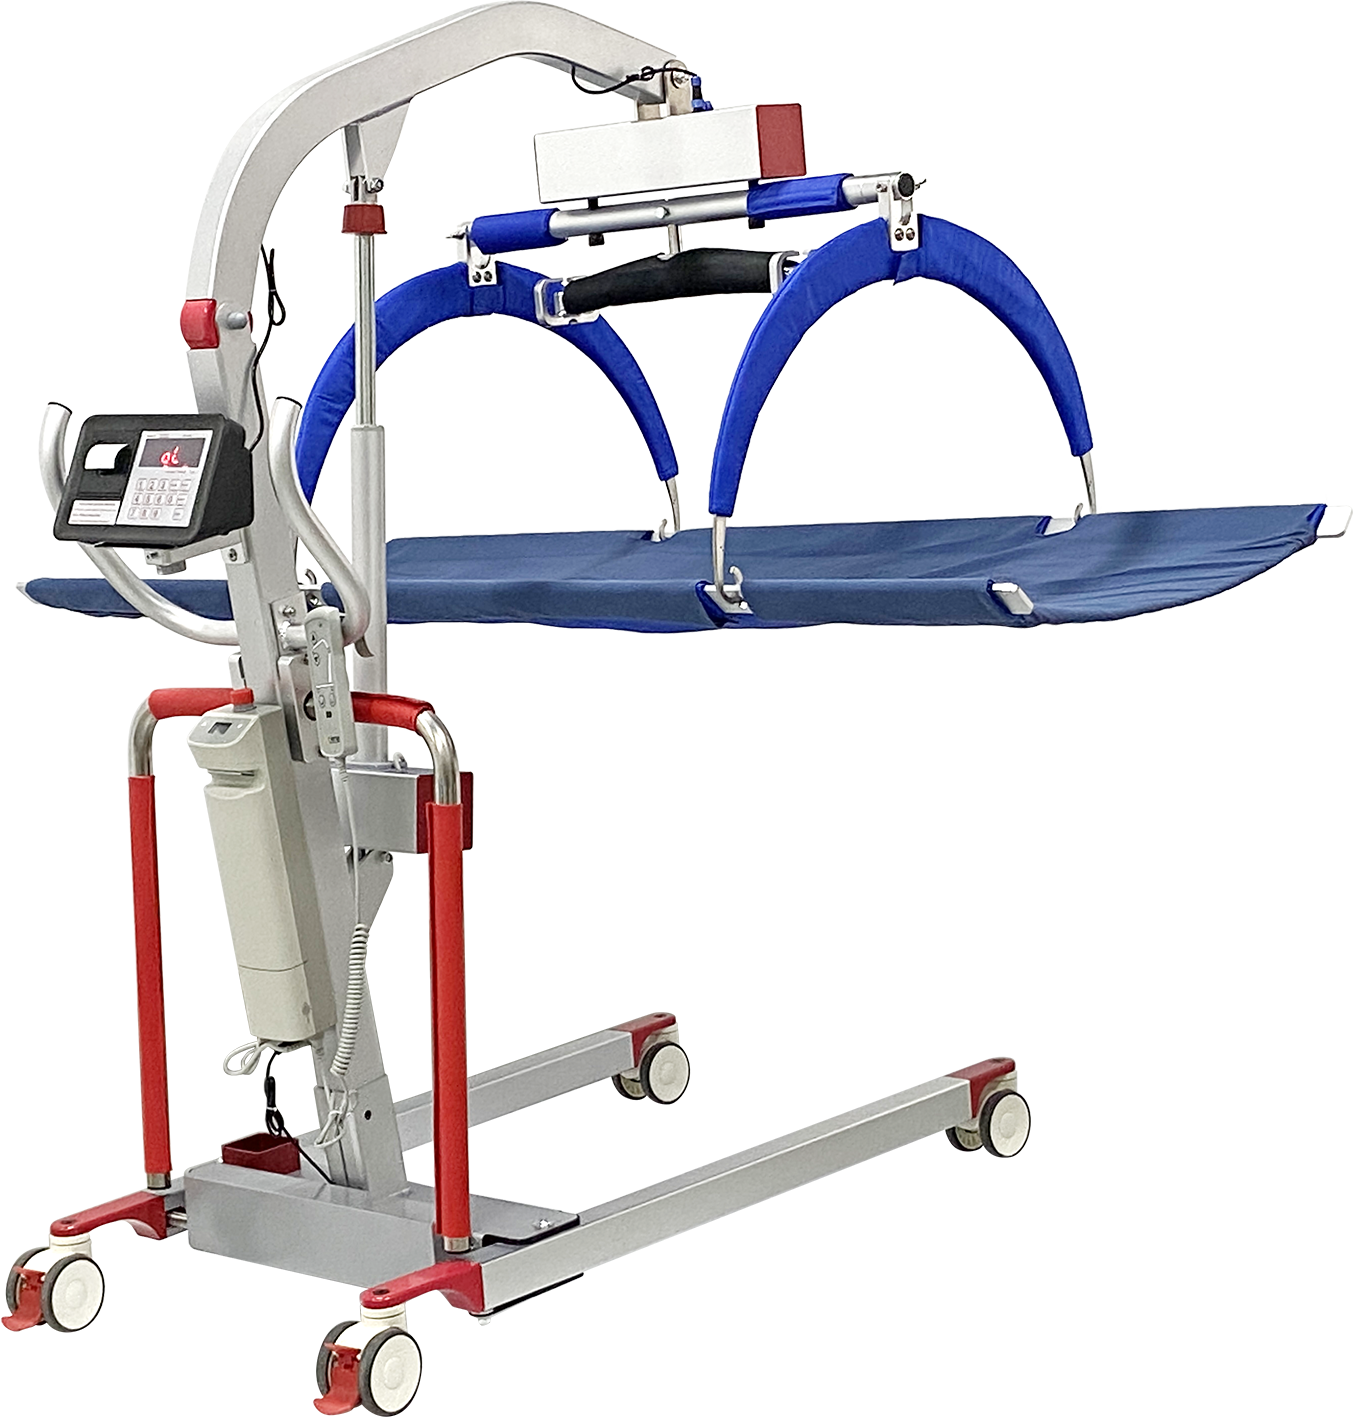 BHH-YWJ-D02B
帮助重症患者平稳转运的设备，可用于短距离移位、称重、康复训练行走